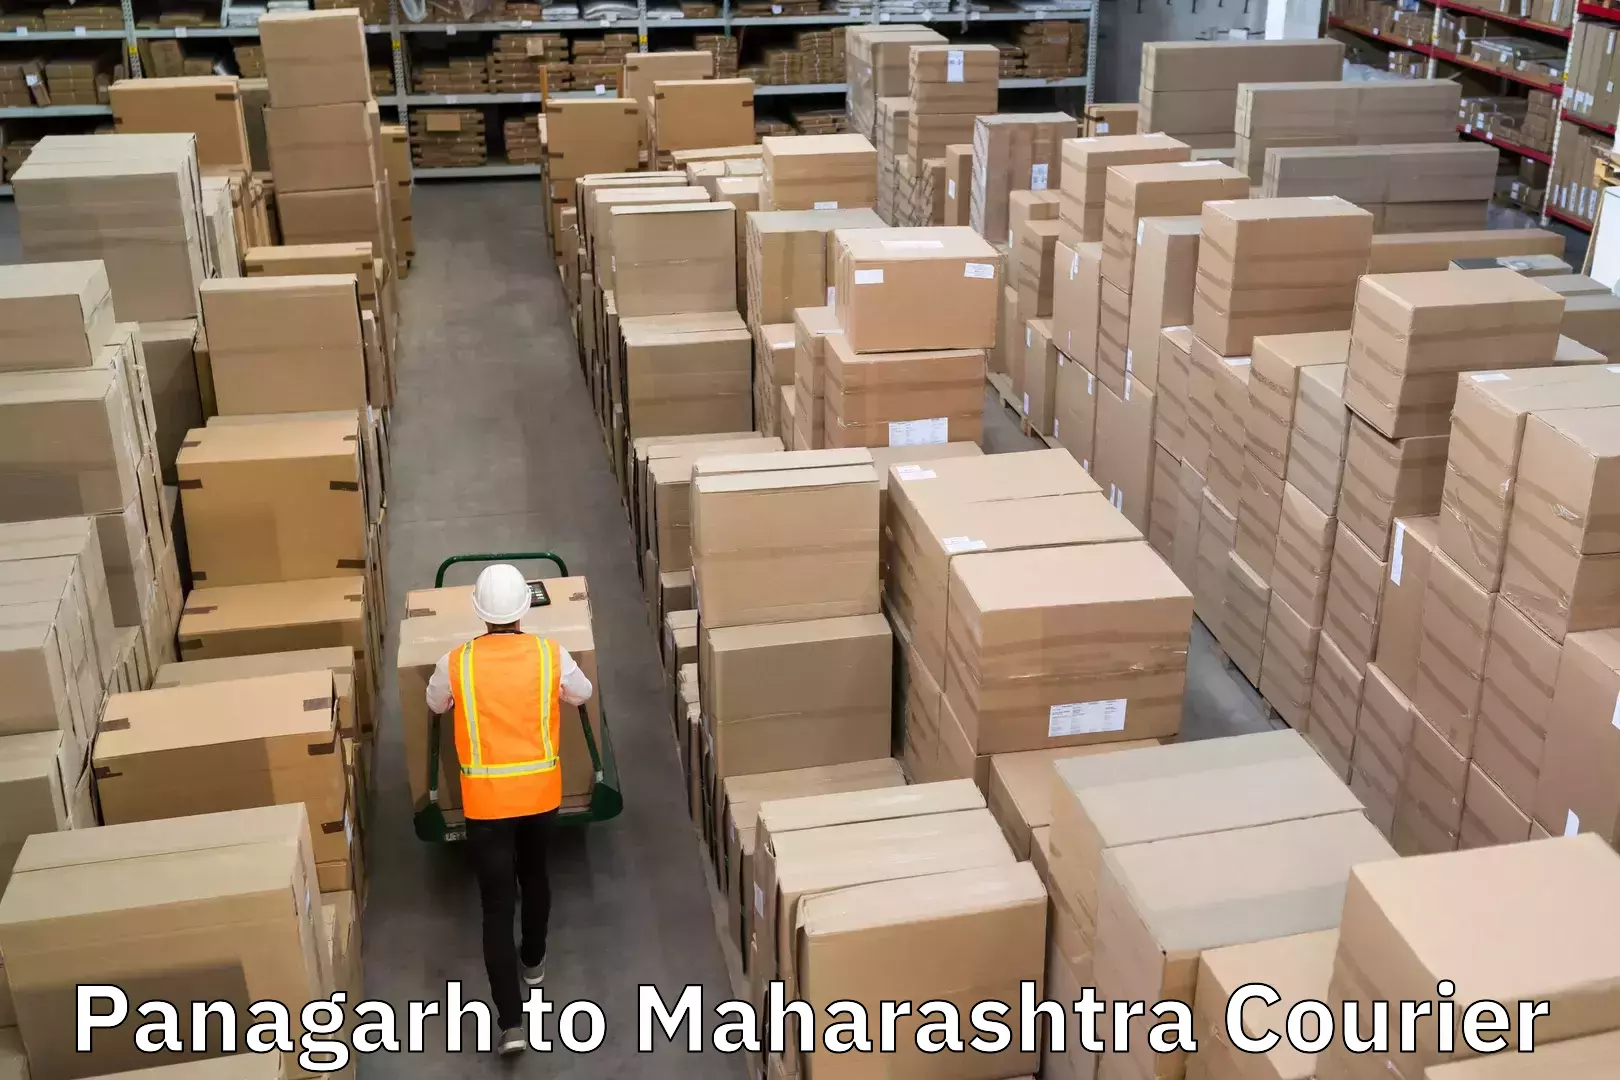 Speedy delivery service Panagarh to Maharashtra